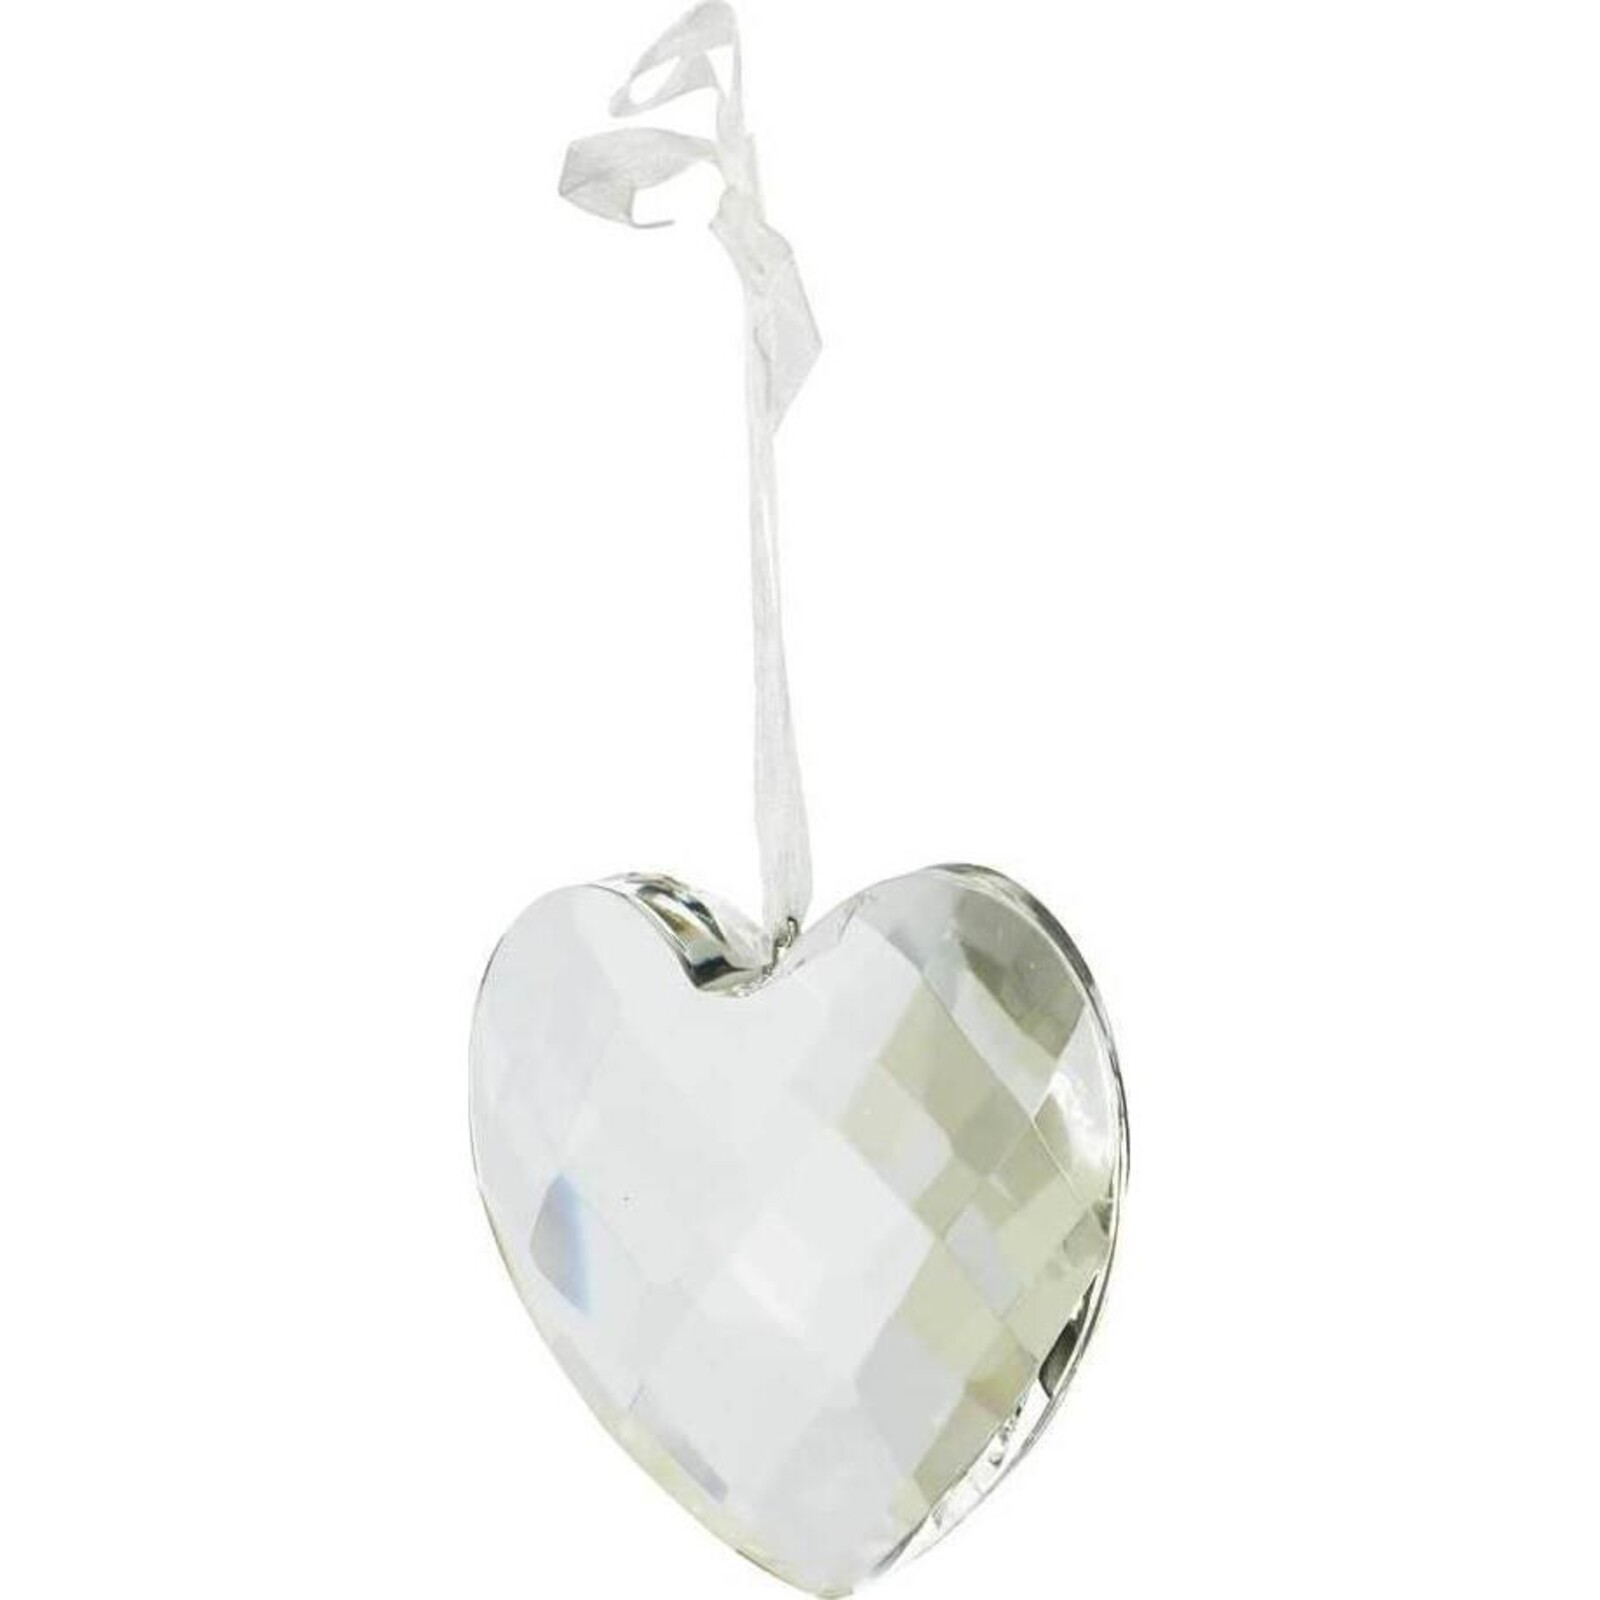 Hanging Heart Cristal Cut Lg